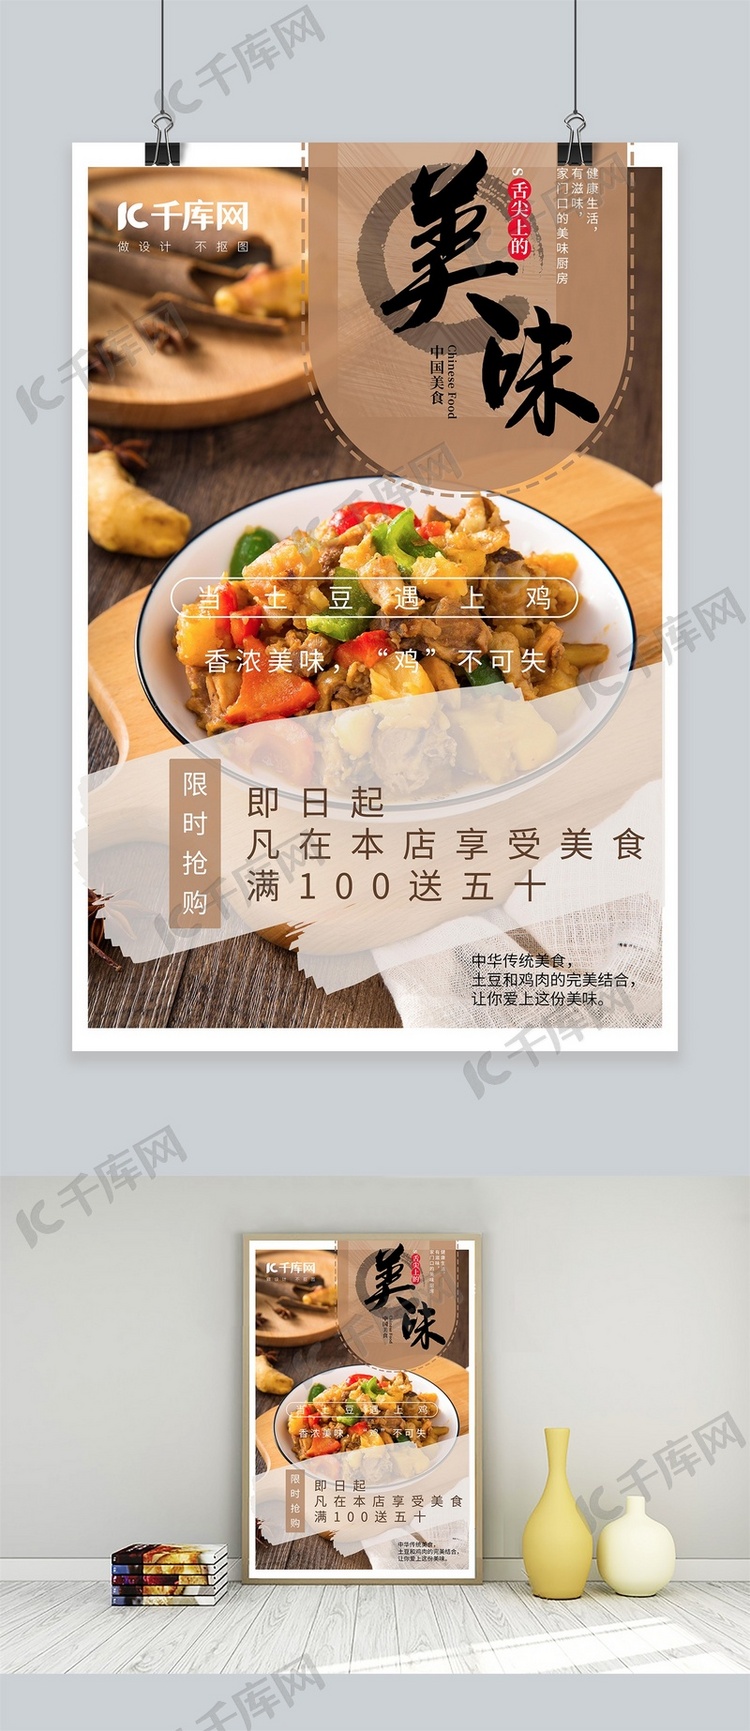 美食土豆鸡黄色中国风海报